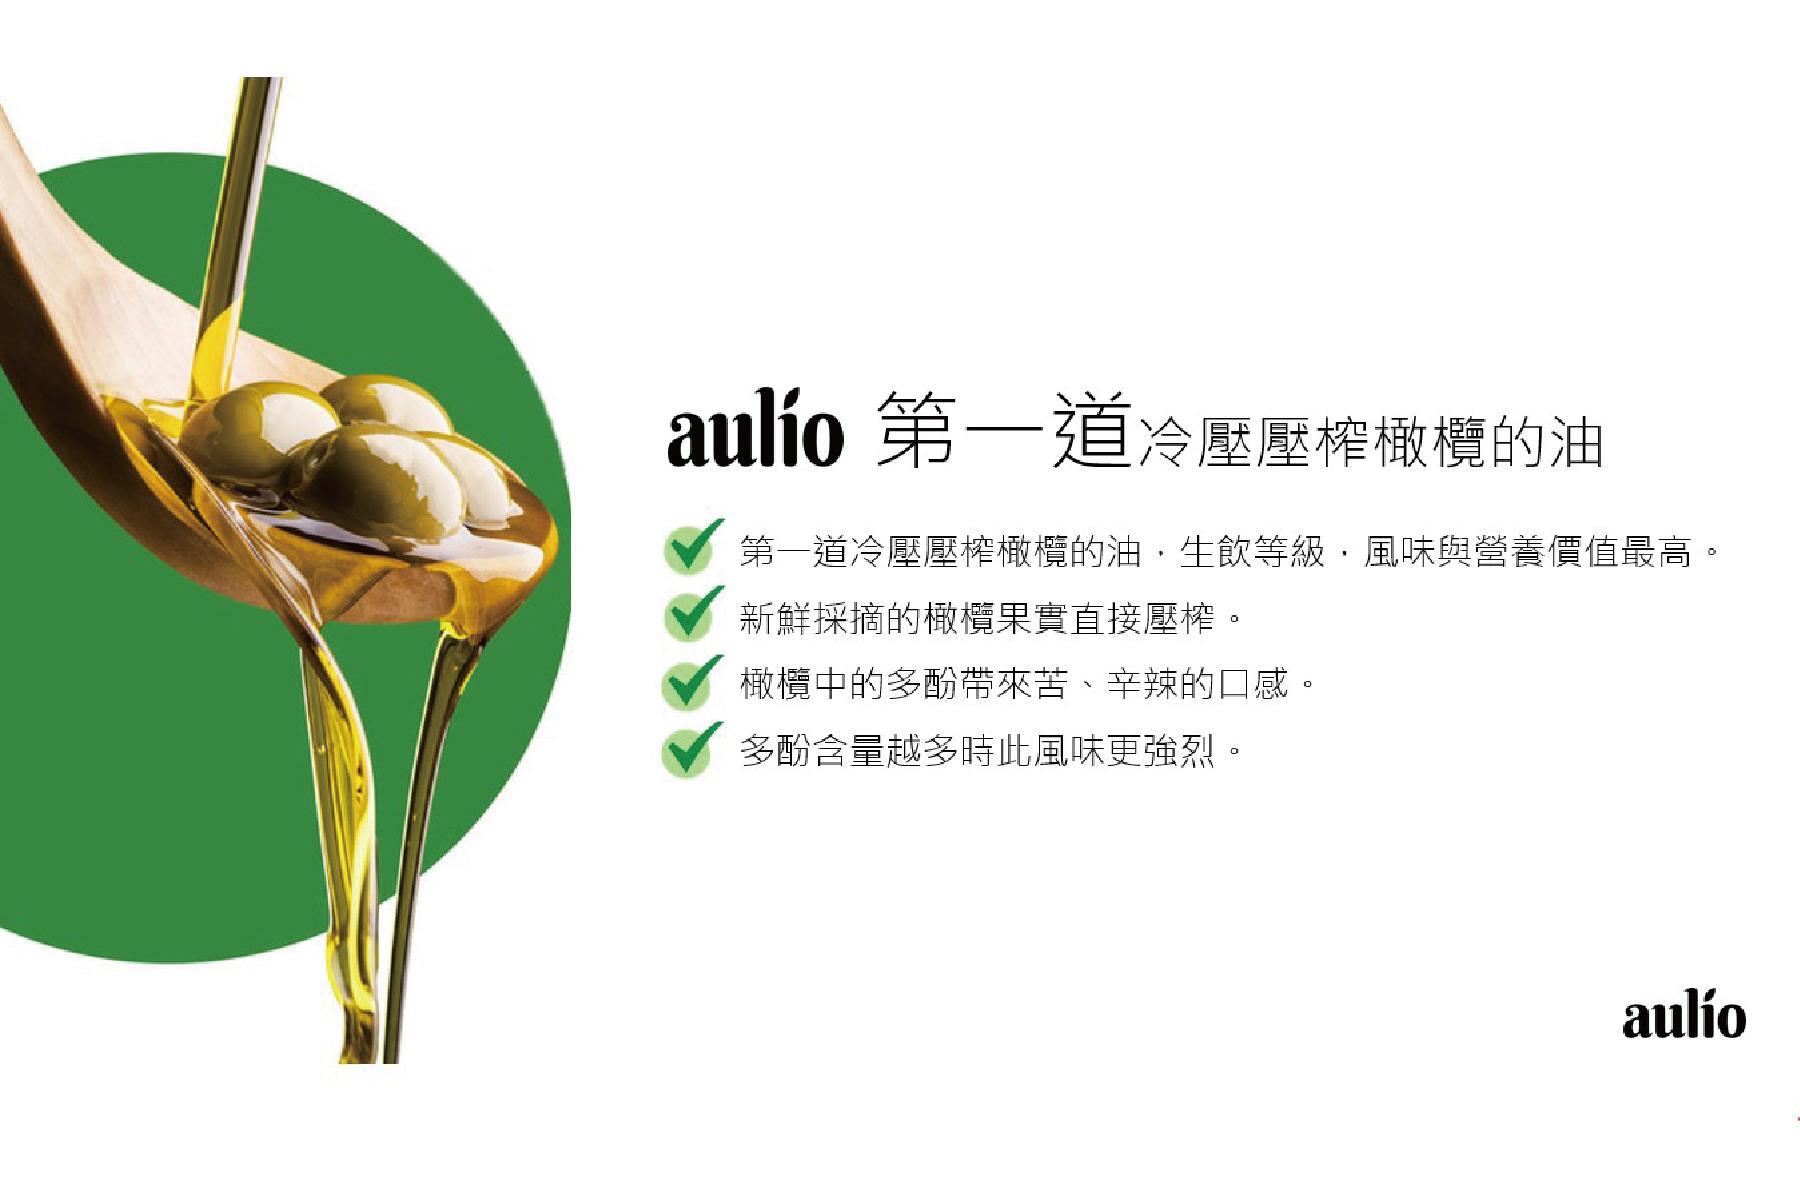 【aulio】澳洲天然特級初榨橄欖油2瓶 提貨券2